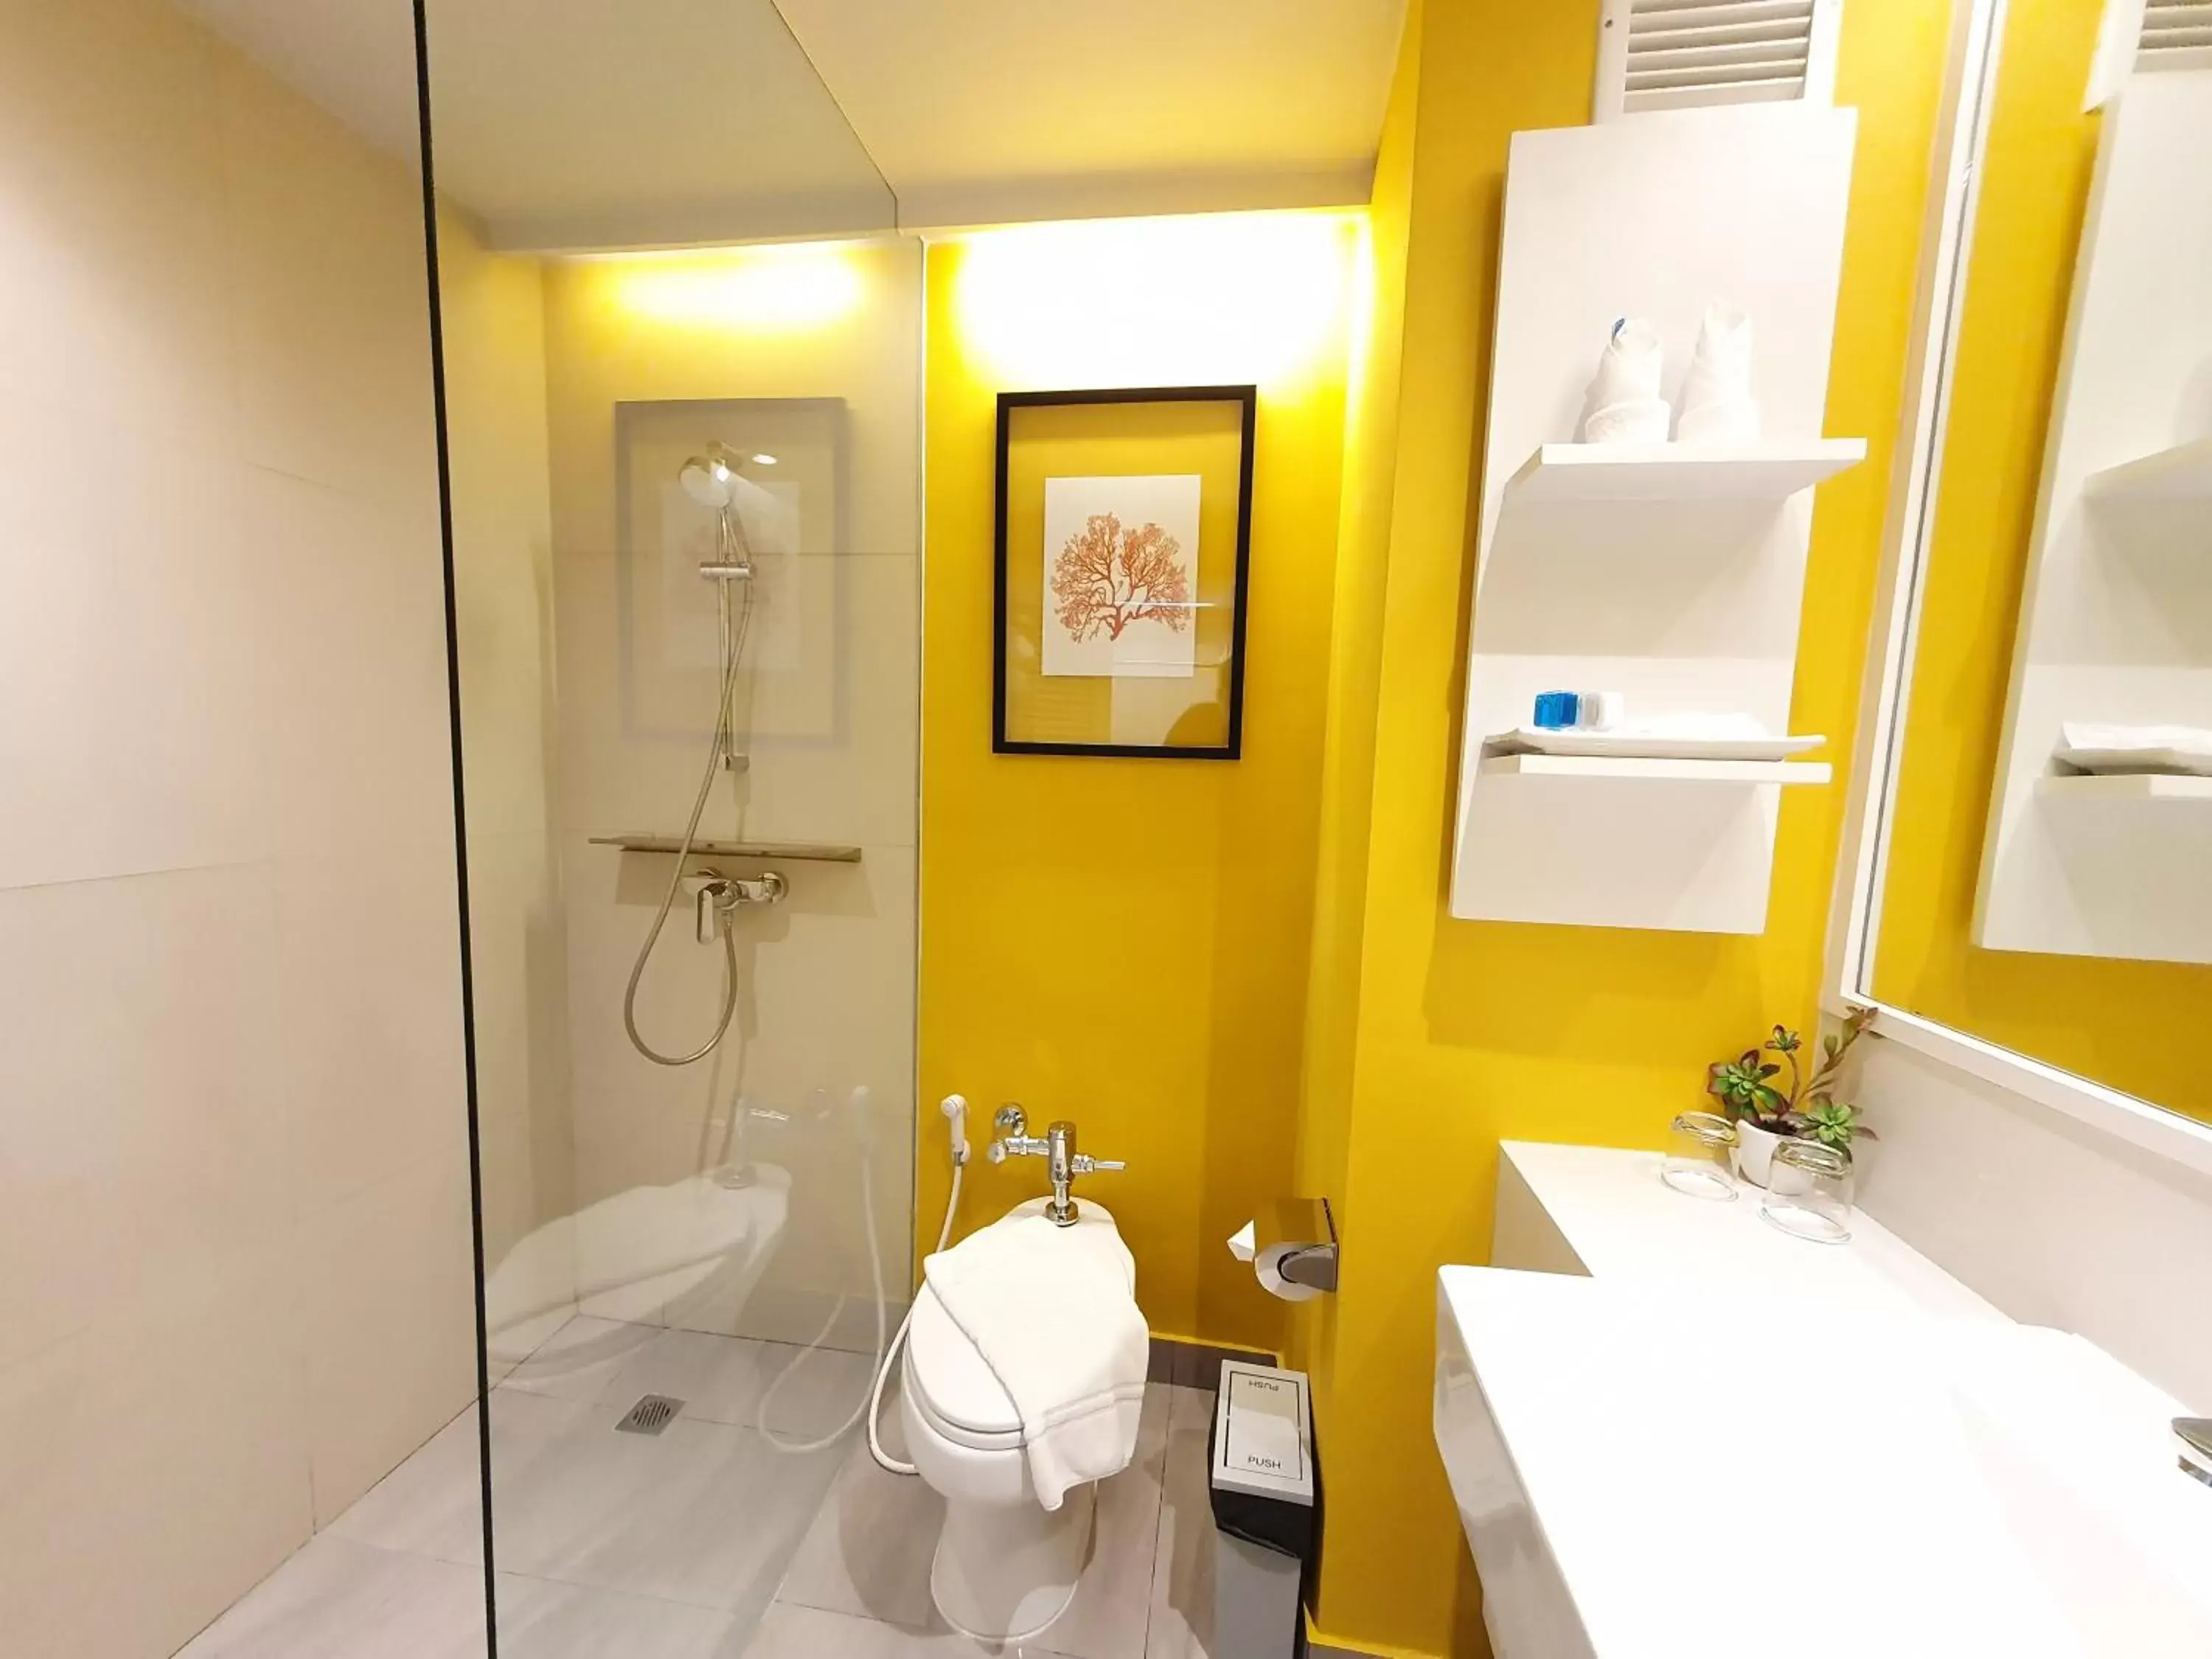 Toilet, Bathroom in Novotel Rayong Rim Pae Resort